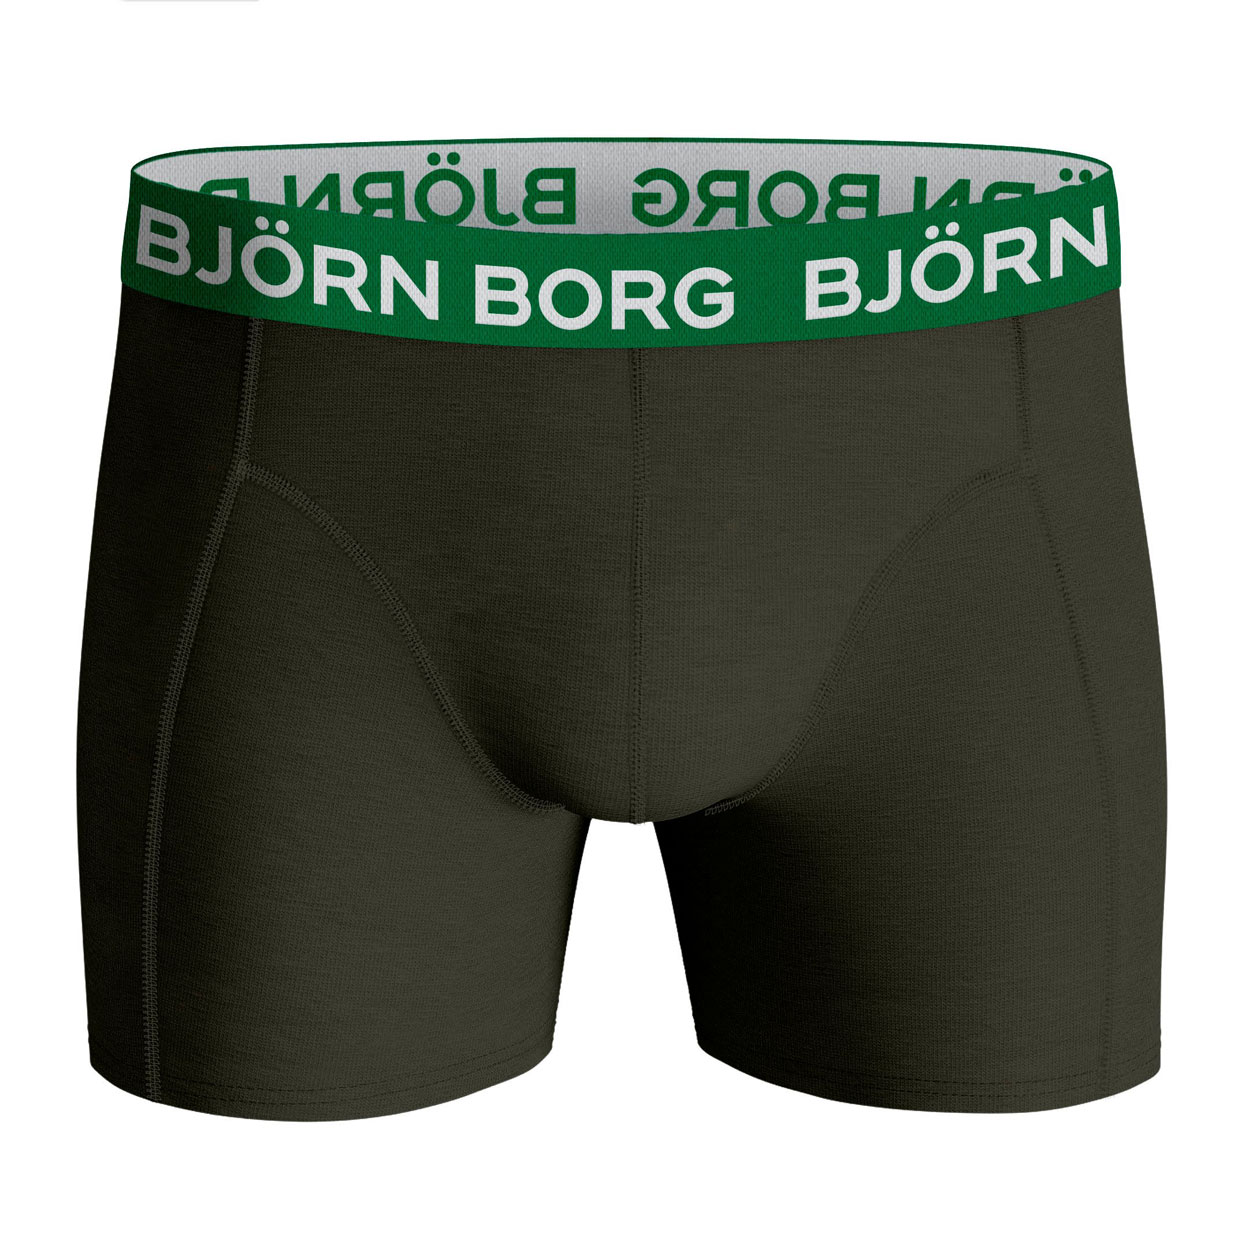 10001751-mp001 Bjorn Borg voor